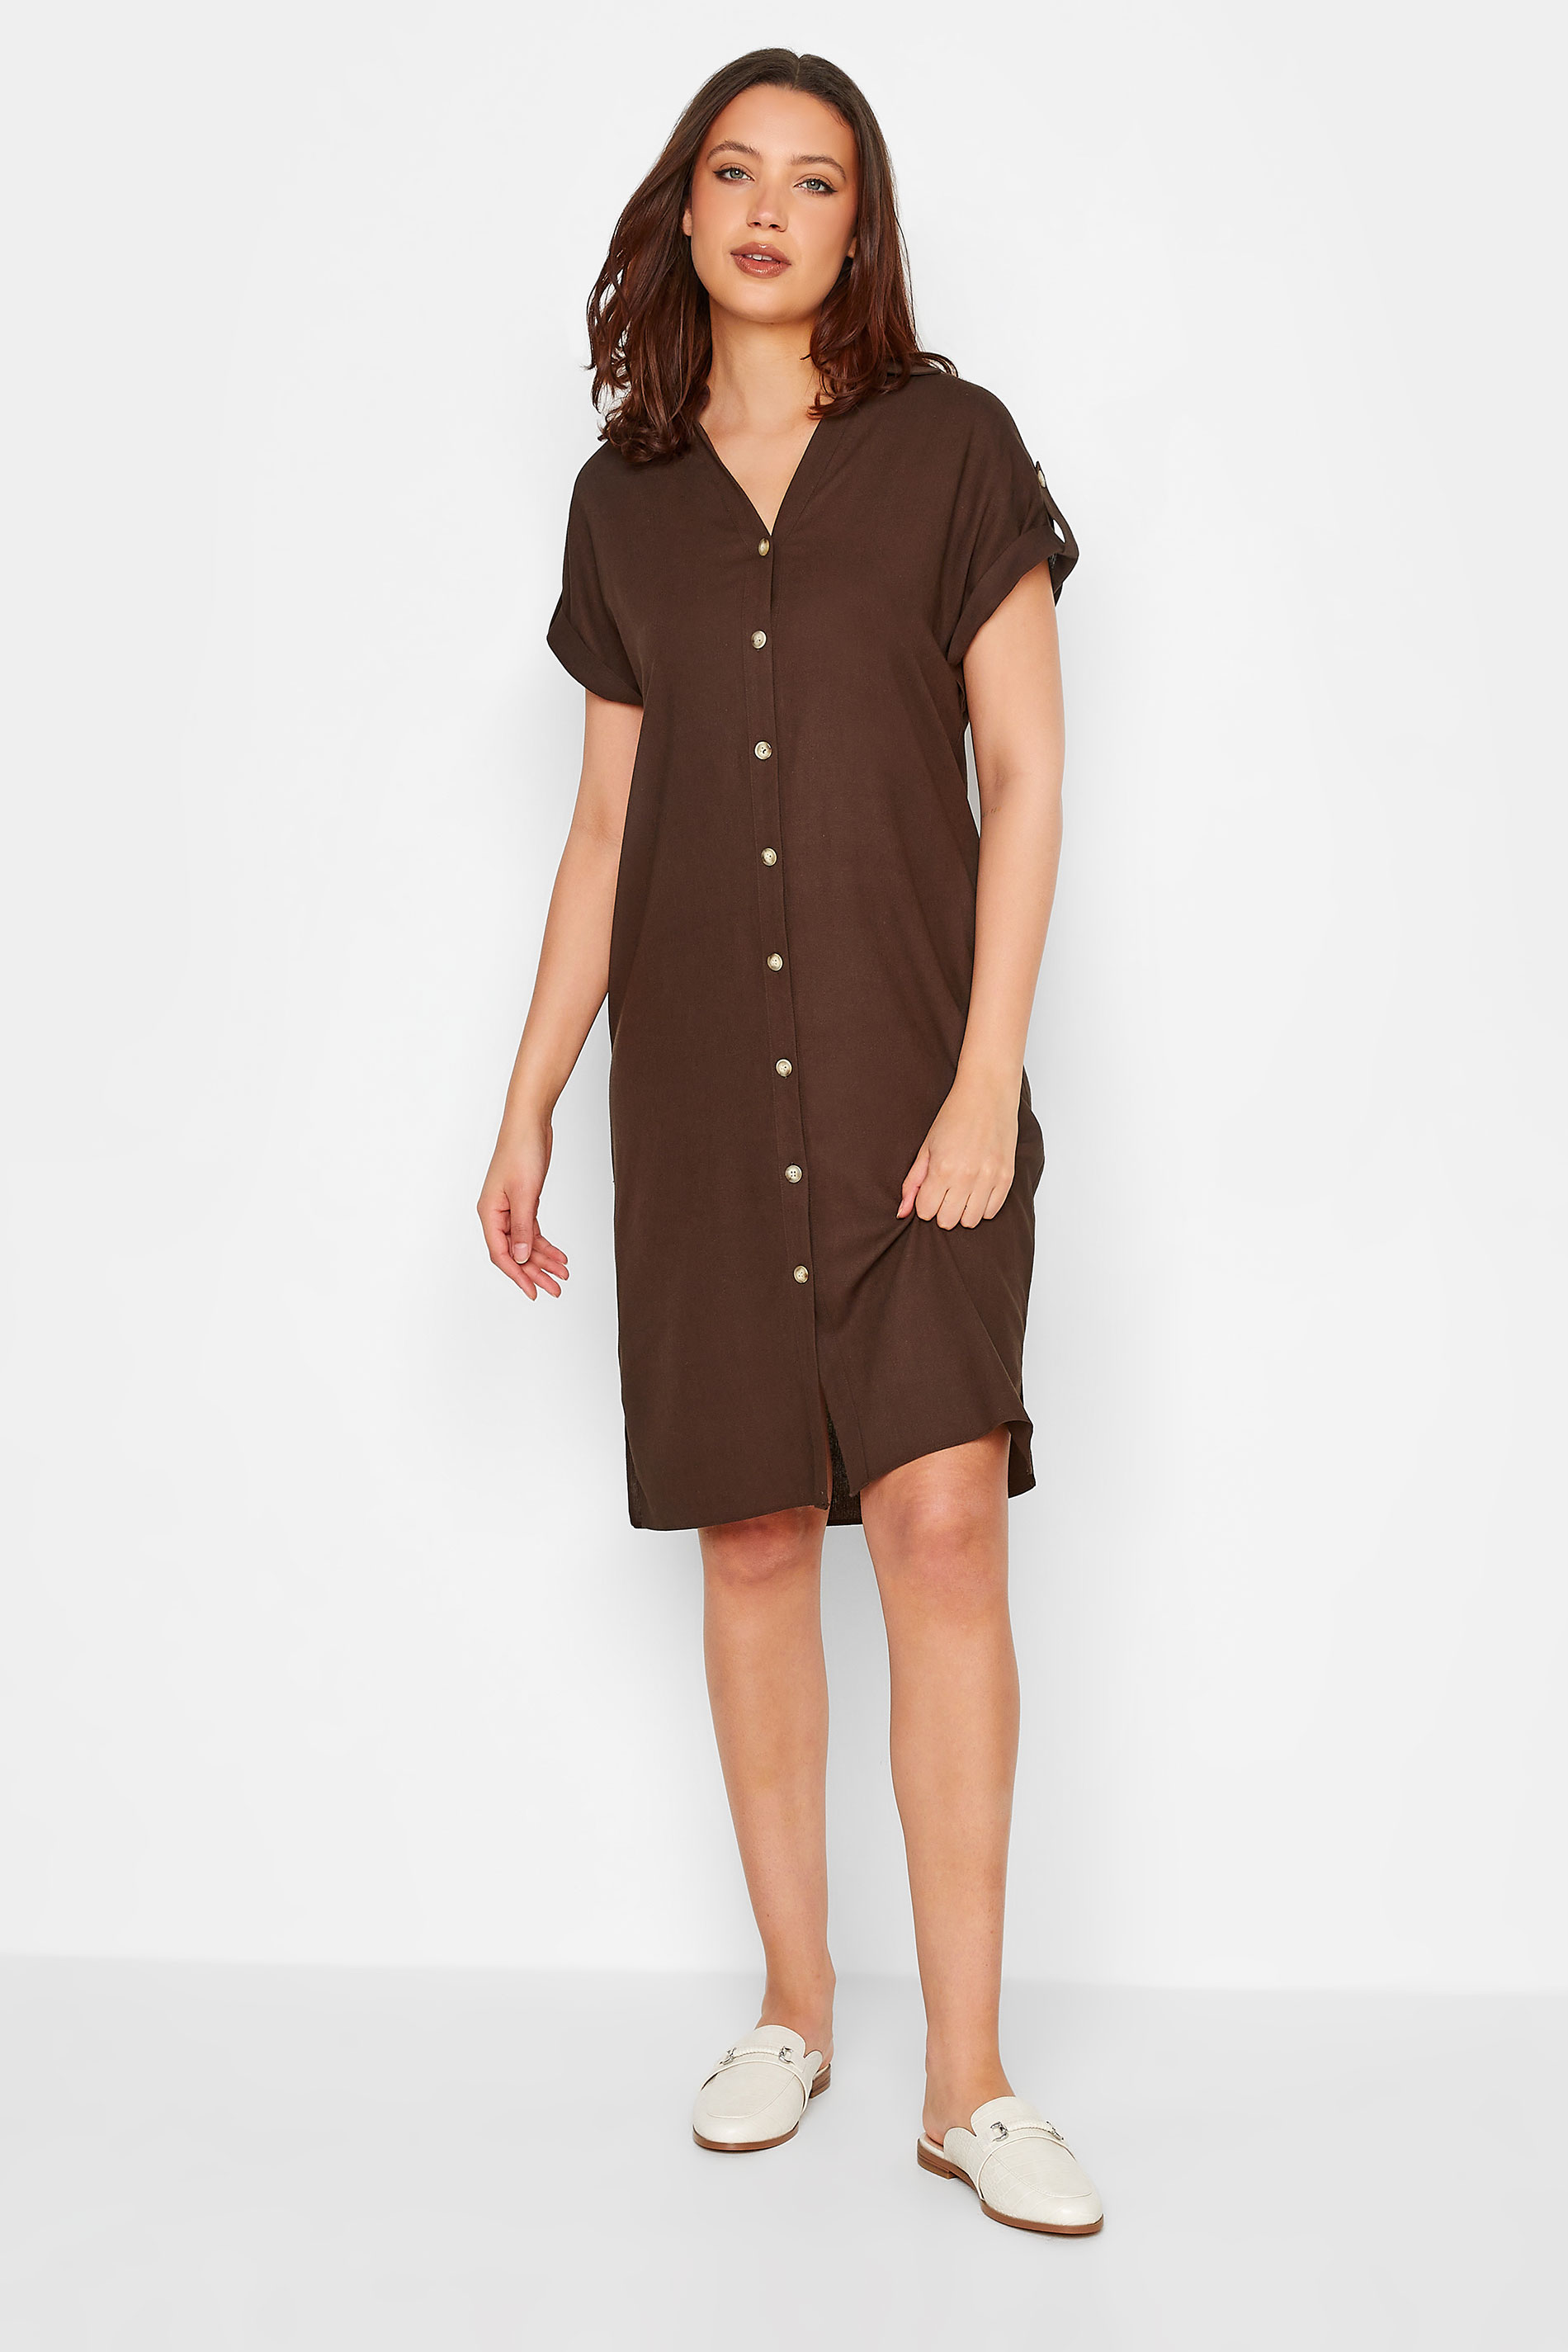 LTS Tall Women's Chocolate Brown Linen Look Dress | Long Tall Sally 2